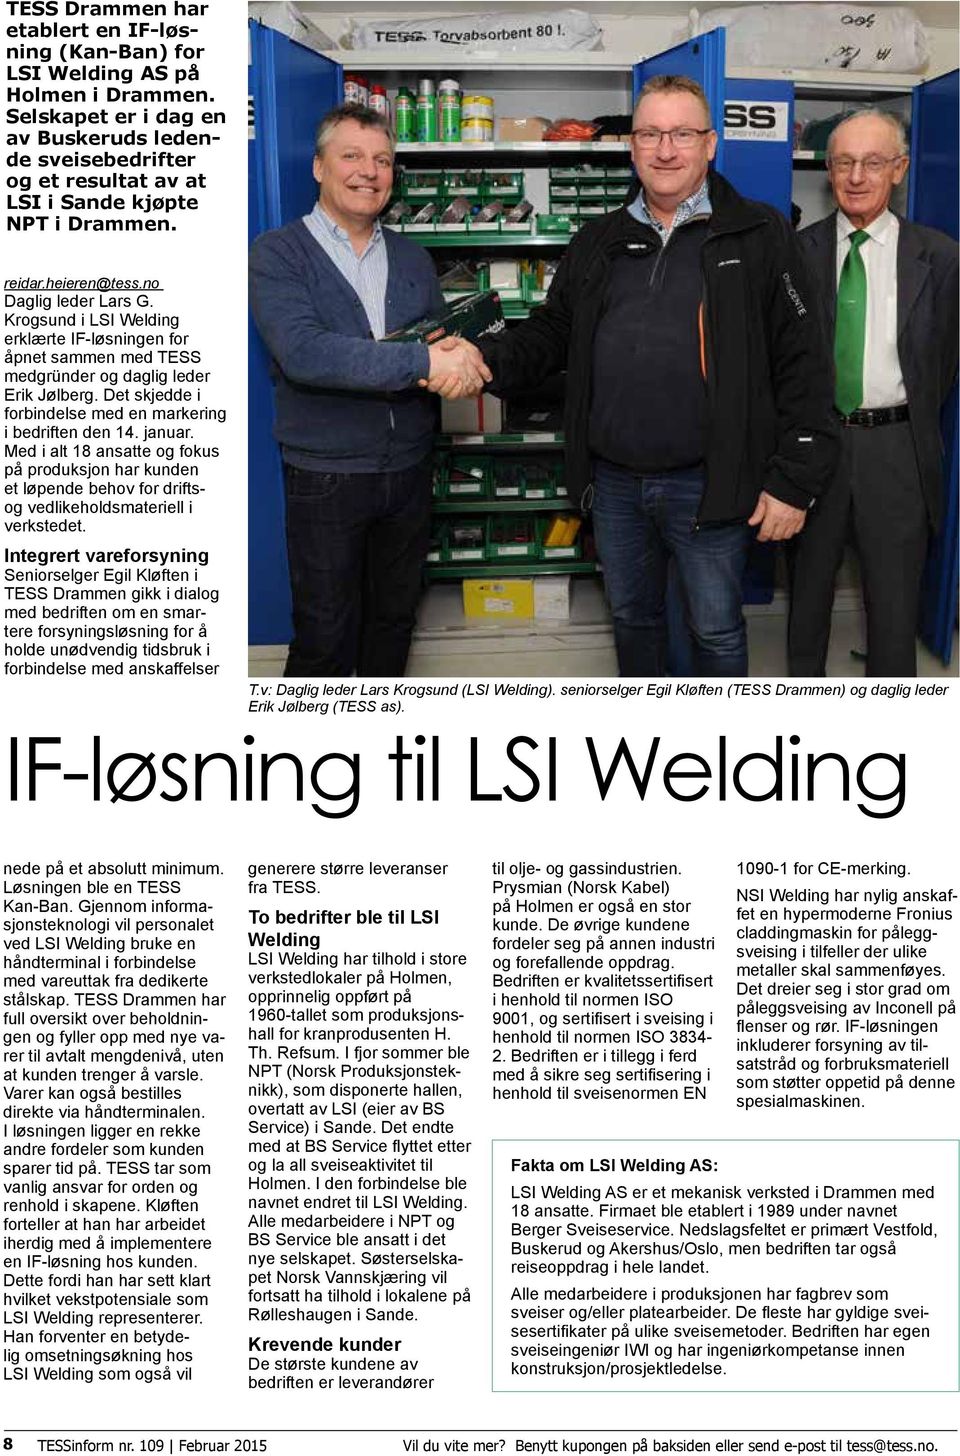 Krogsund i LSI Welding erklærte IF-løsningen for åpnet sammen med TESS medgründer og daglig leder Erik Jølberg. Det skjedde i forbindelse med en markering i bedriften den 14. januar.